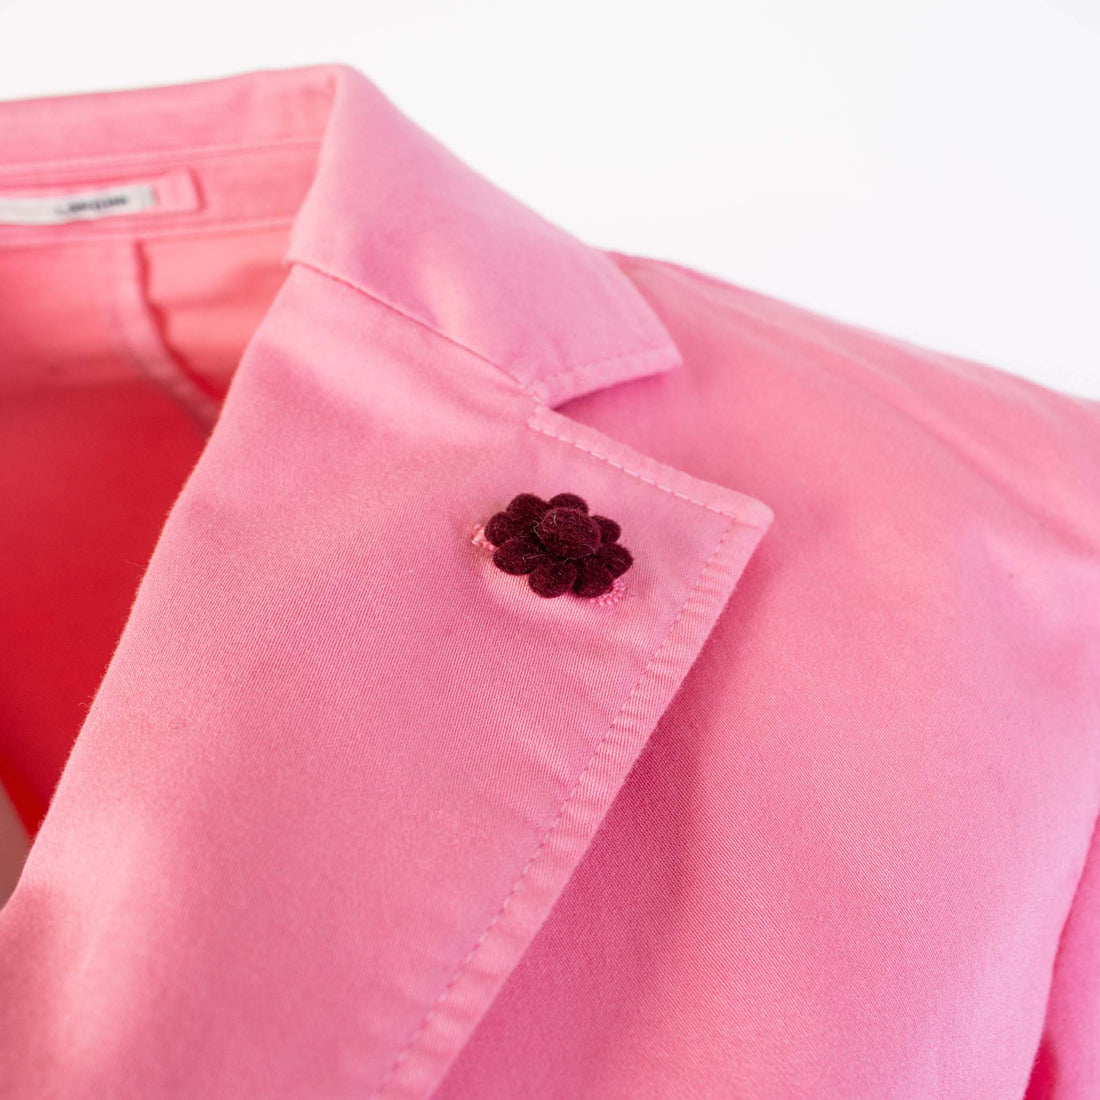 Chic Pink Cotton Jacket by Lardini